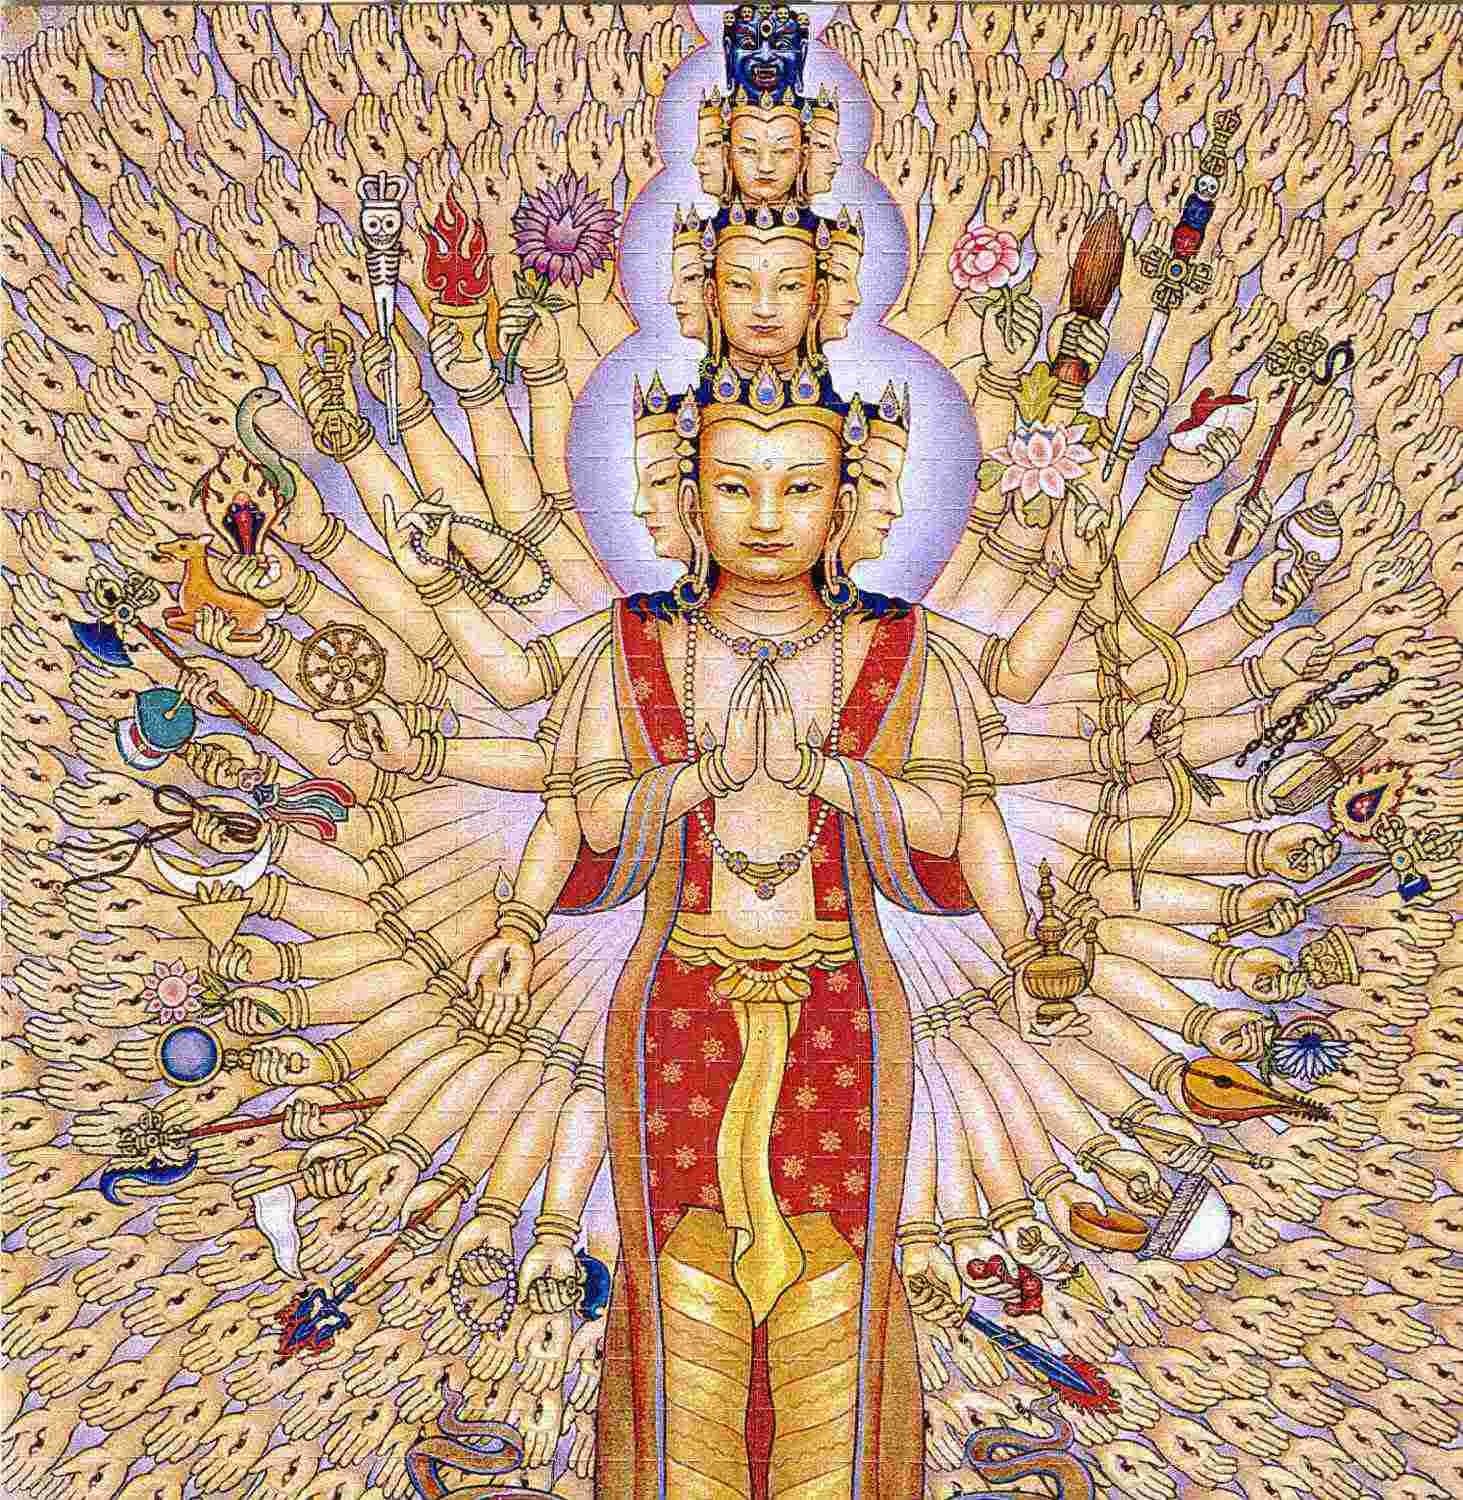 Avalokiteshvara arms many